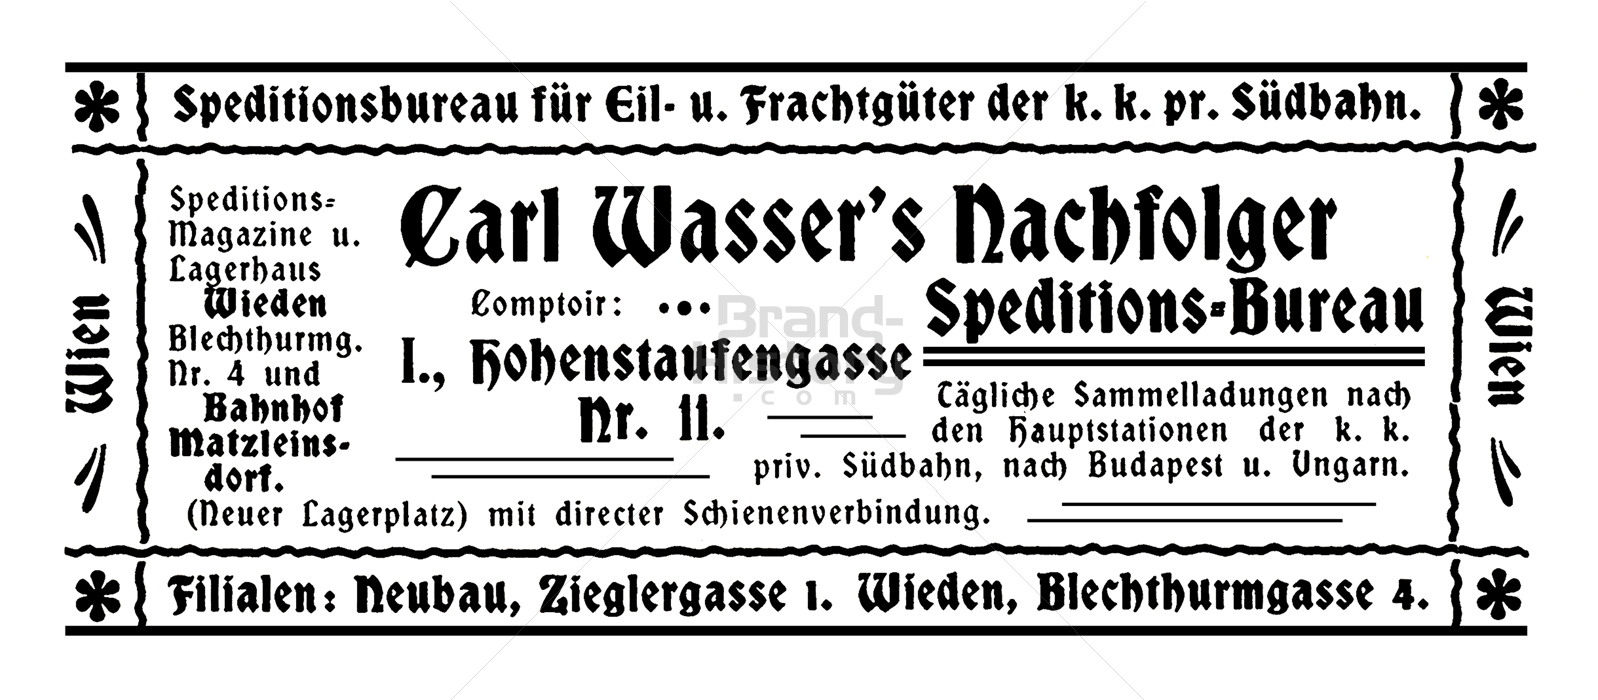 Carl Wasser's Nachfolger, Wien